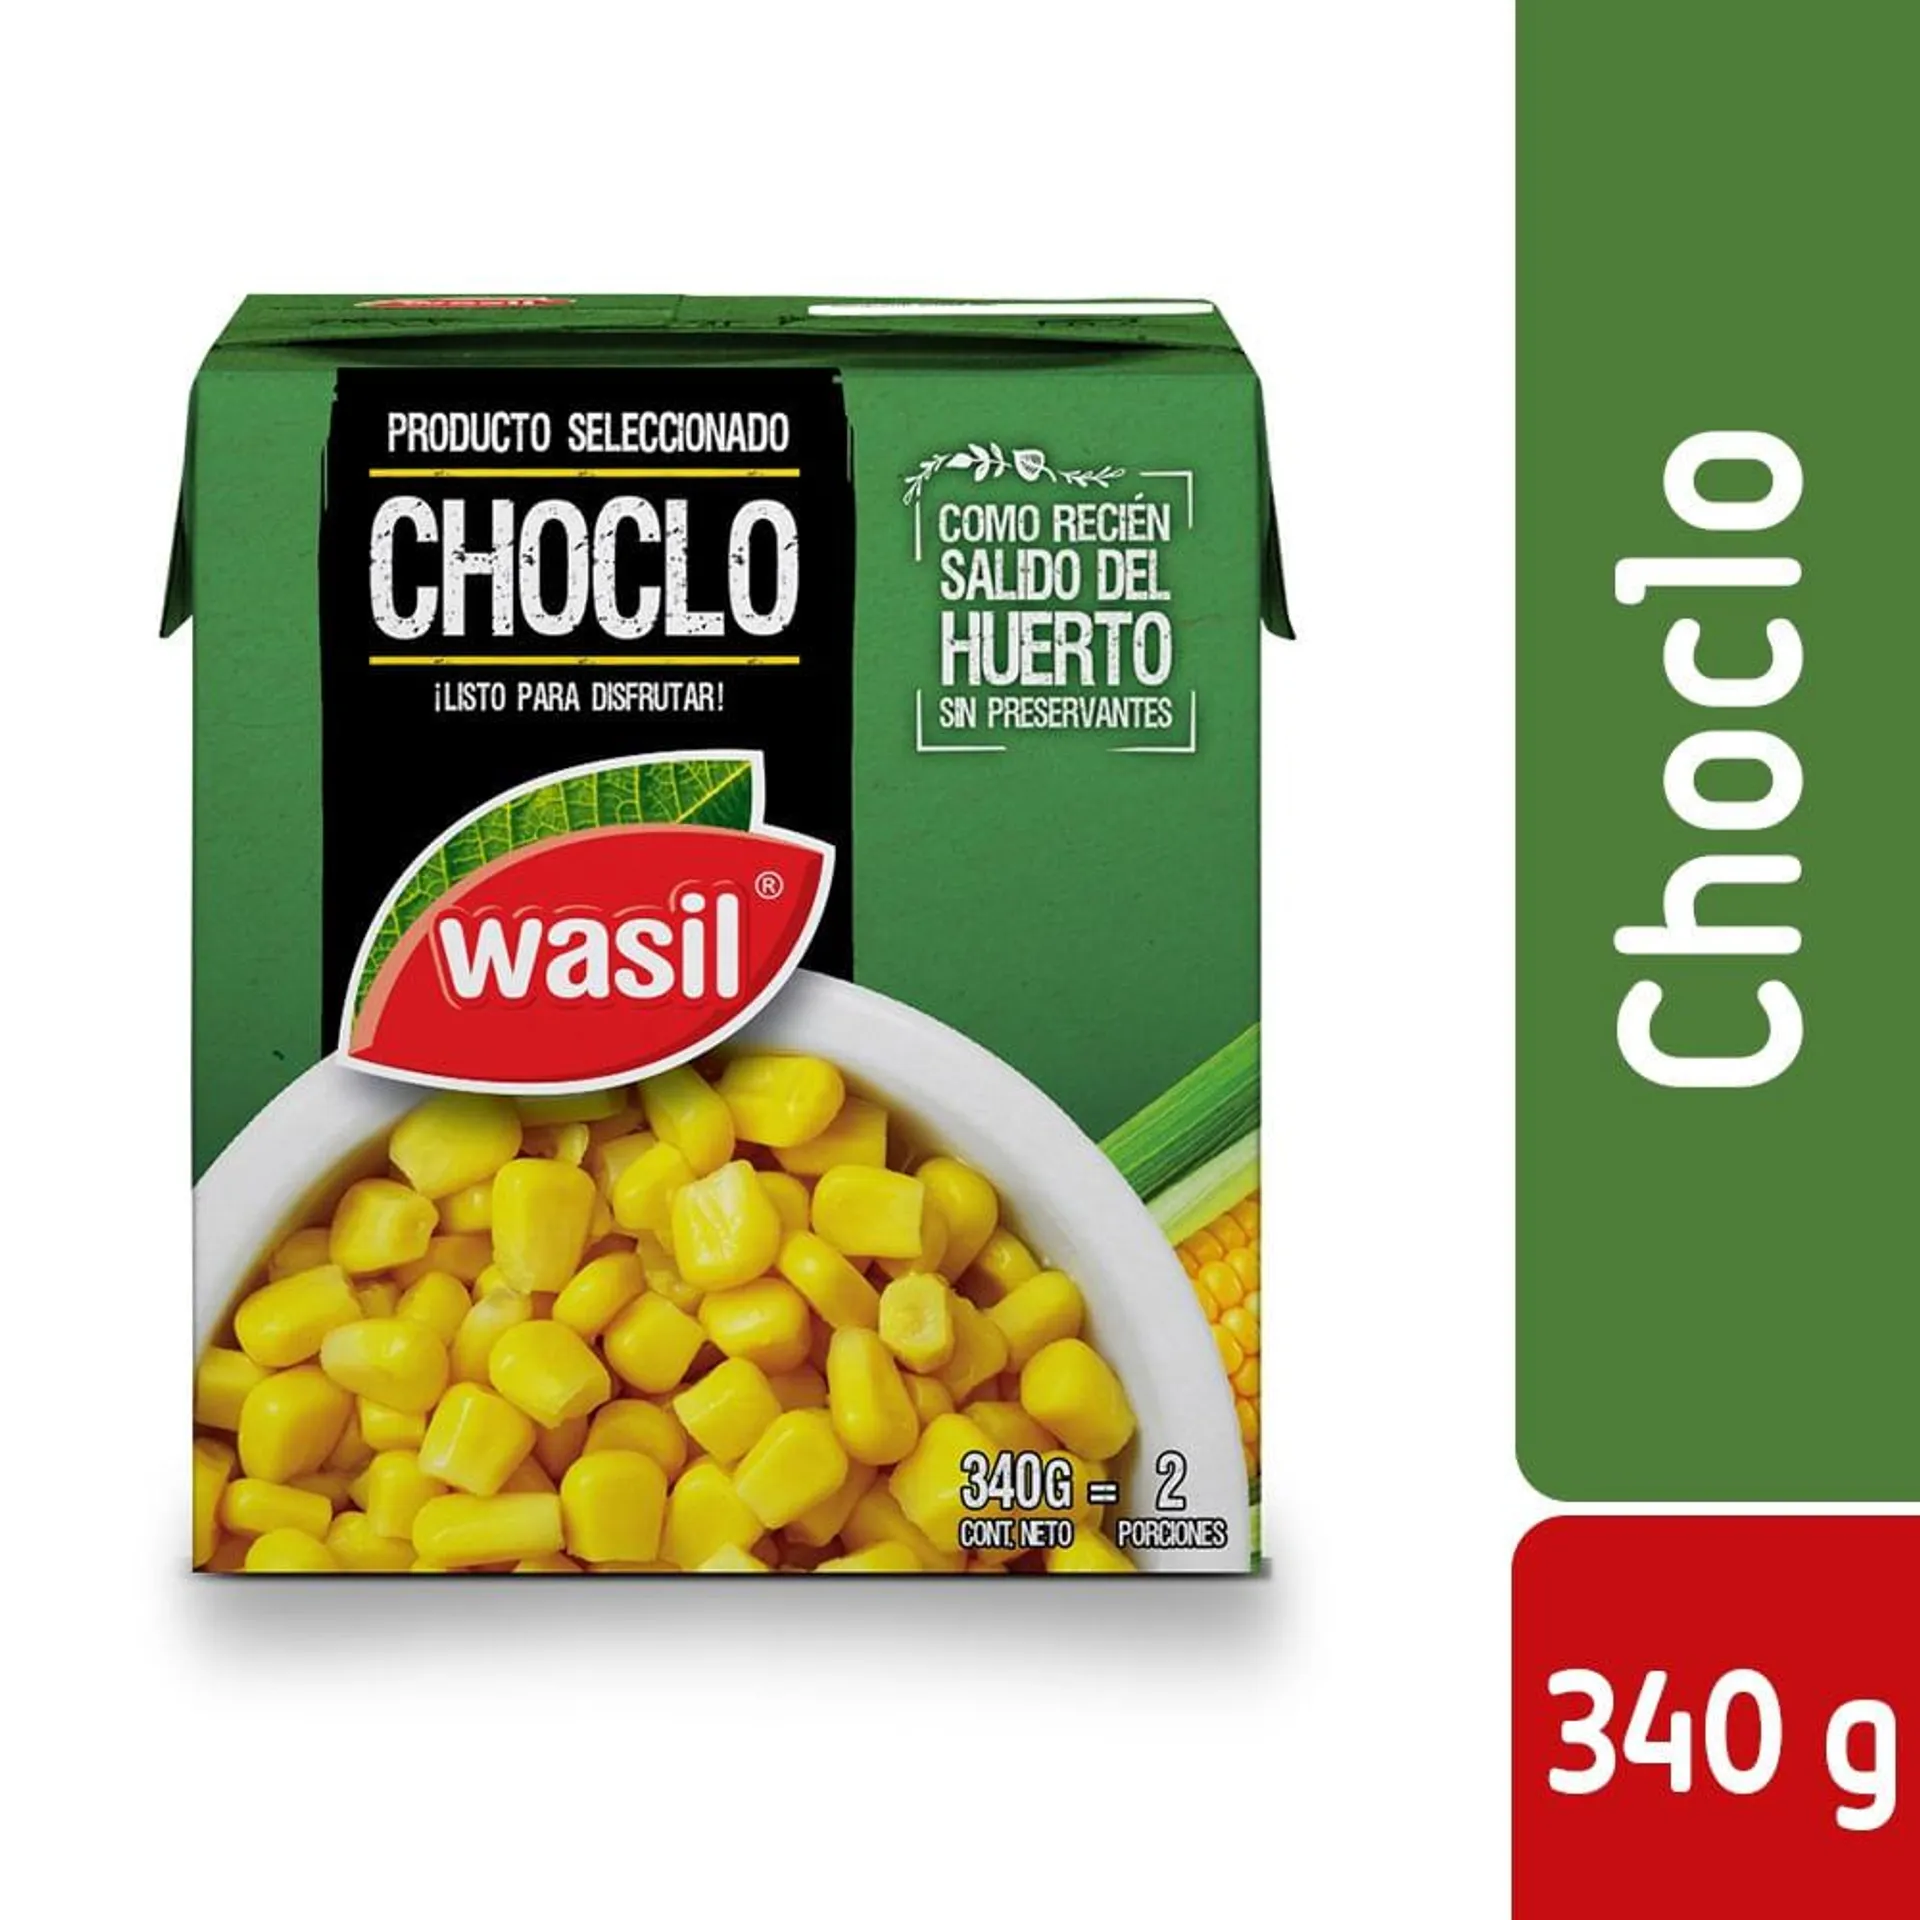 Choclos Wasil tetra 340 g